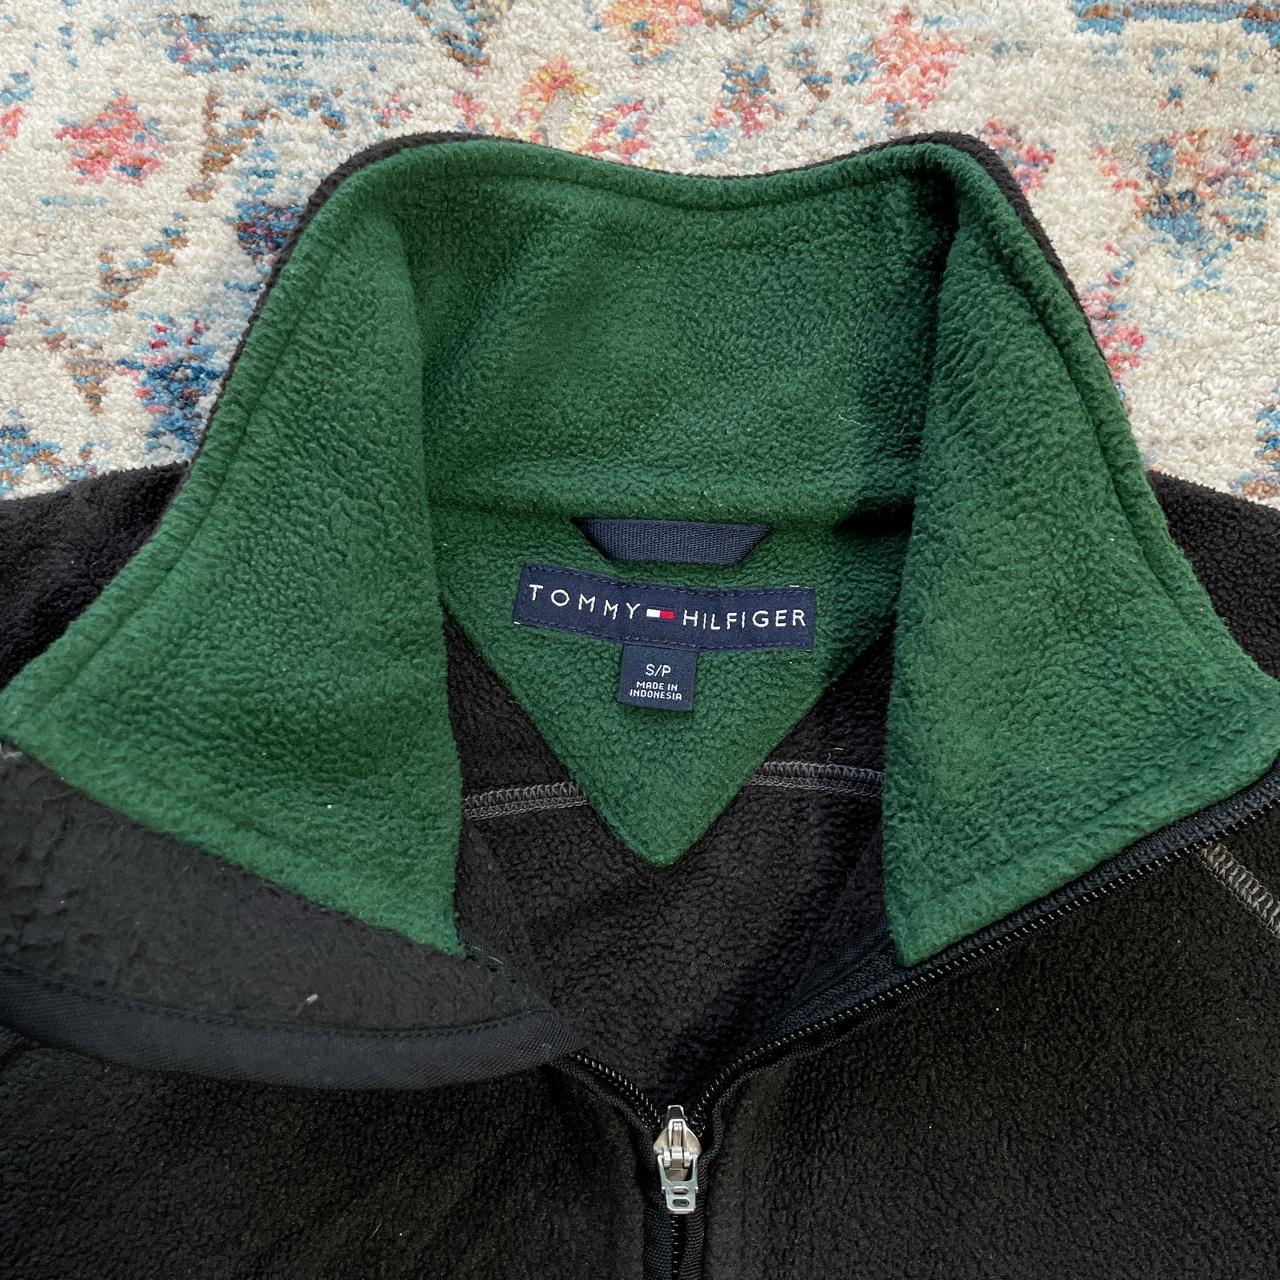 Vintage Tommy Hilfiger Black and Green Fleece